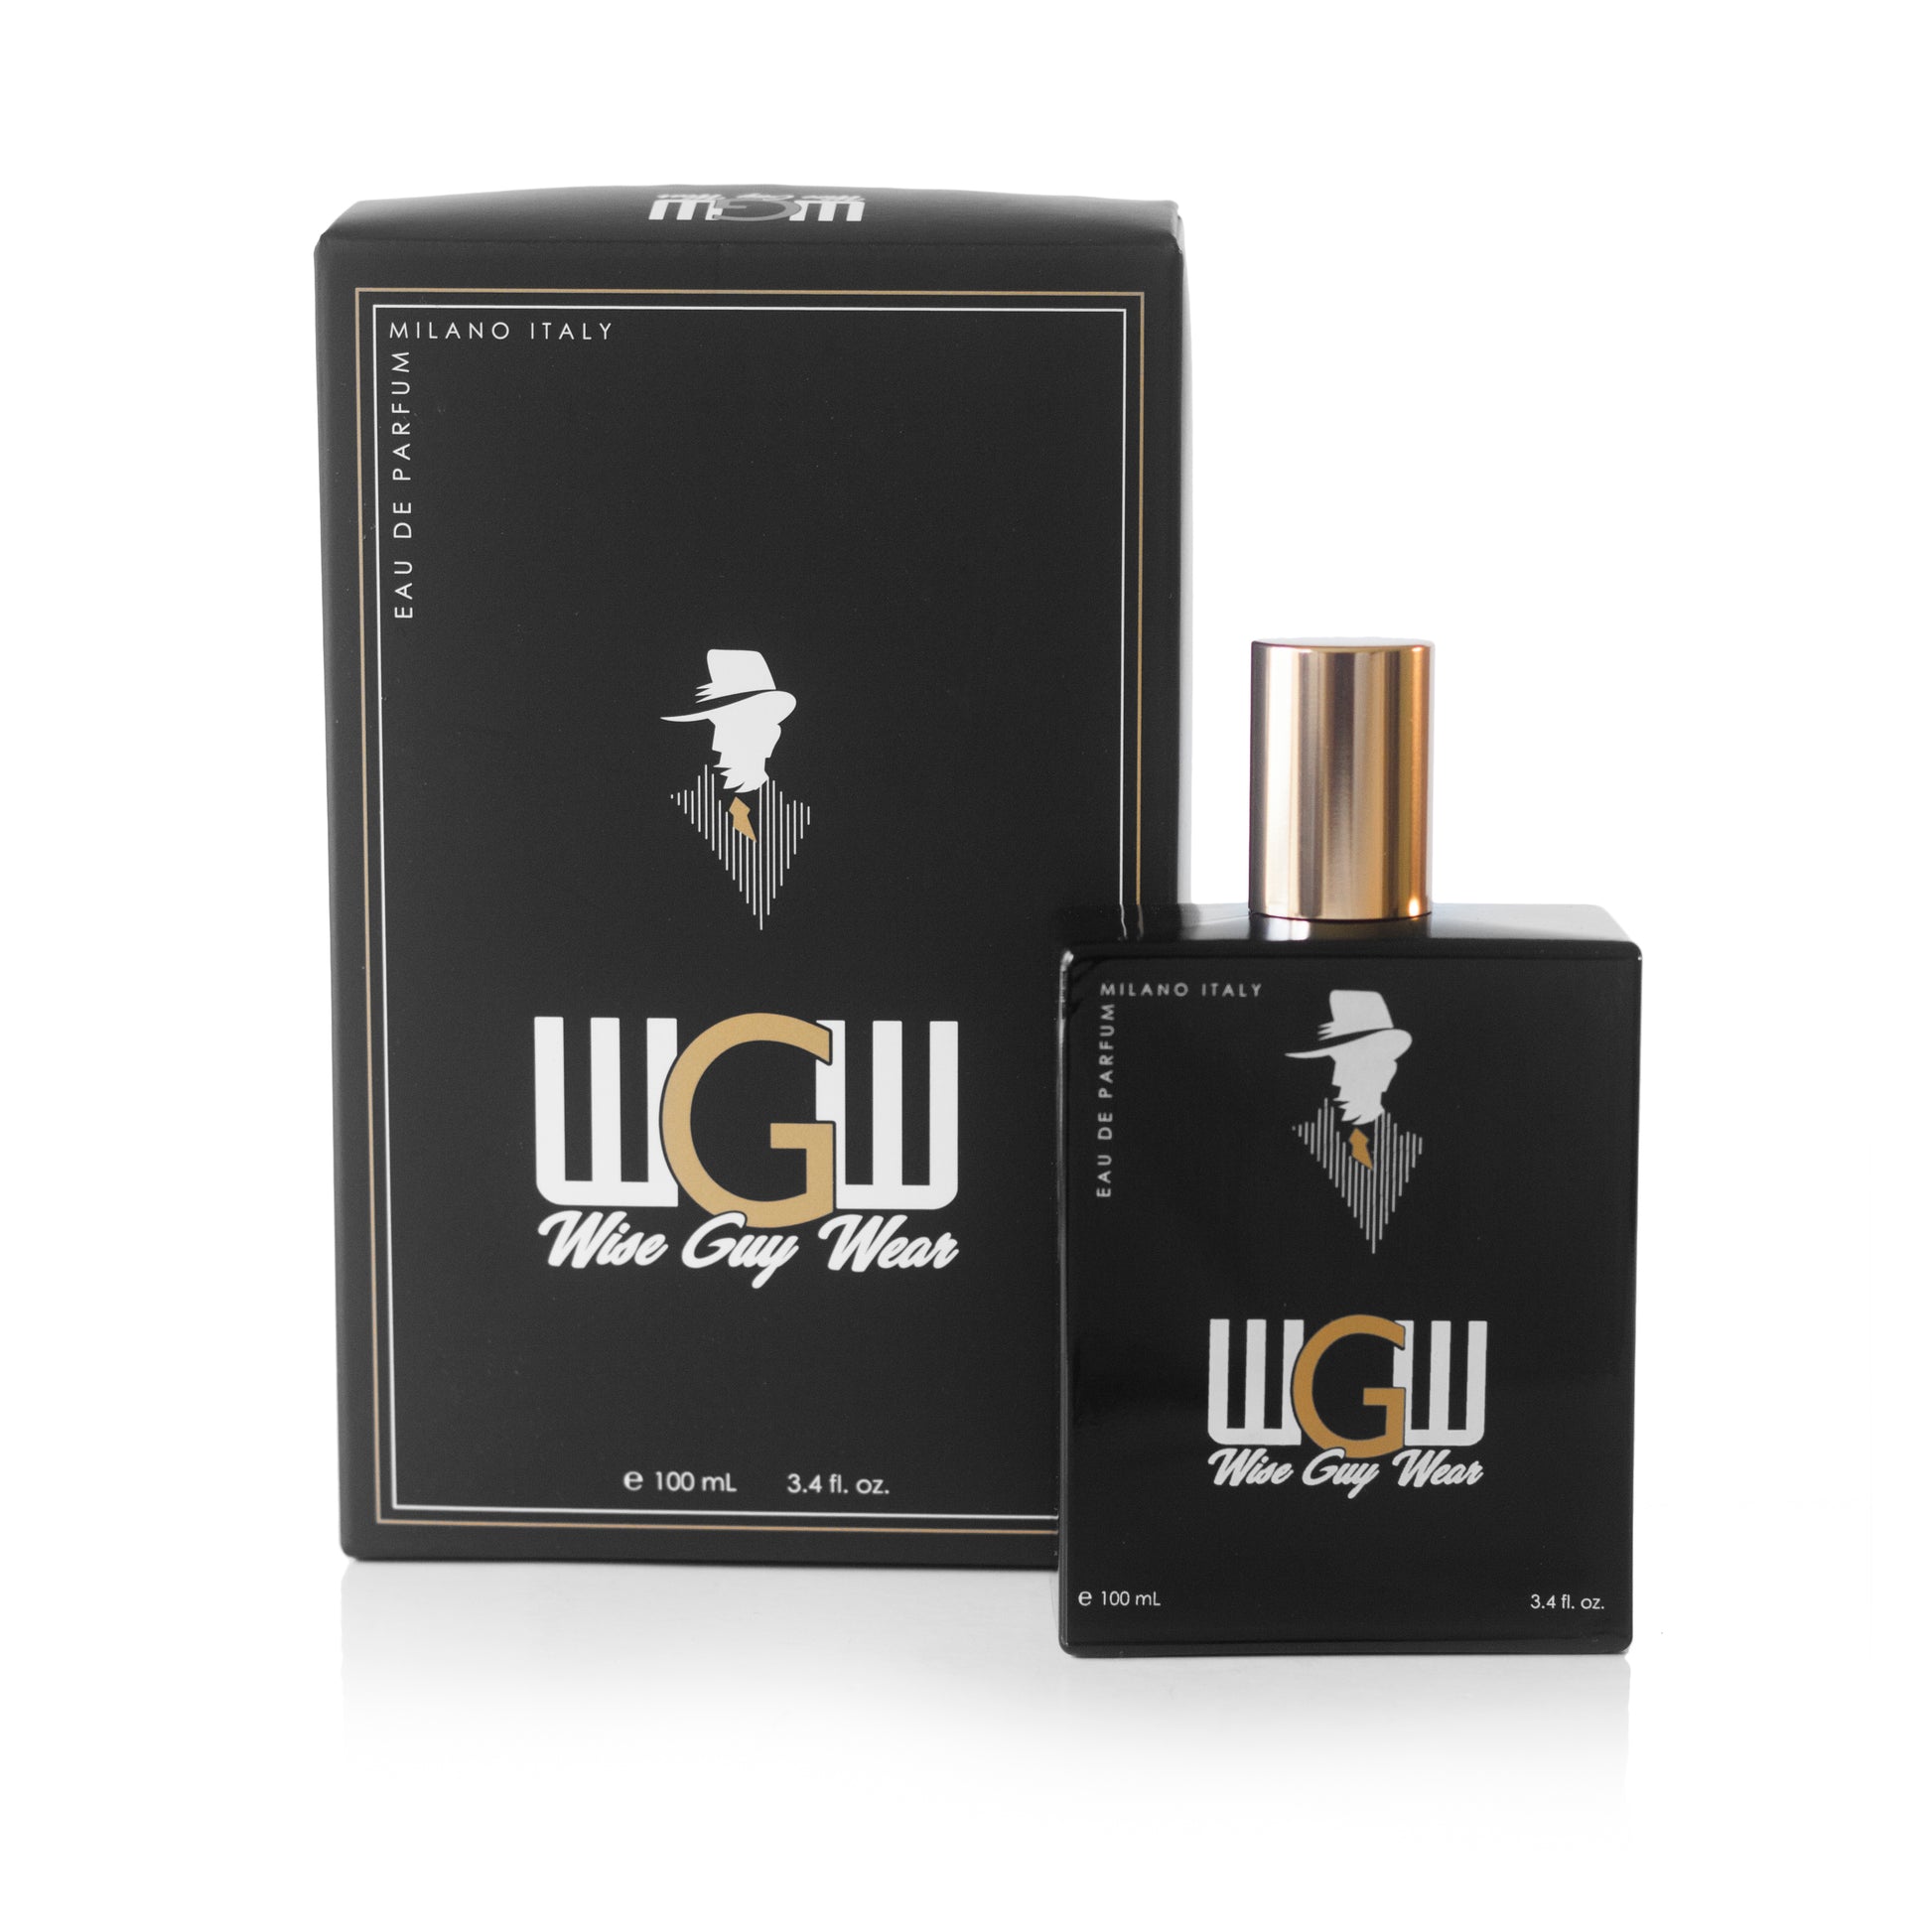 Wise Guy Wear Eau de Parfum Spray for Men 3.4 oz. Click to open in modal